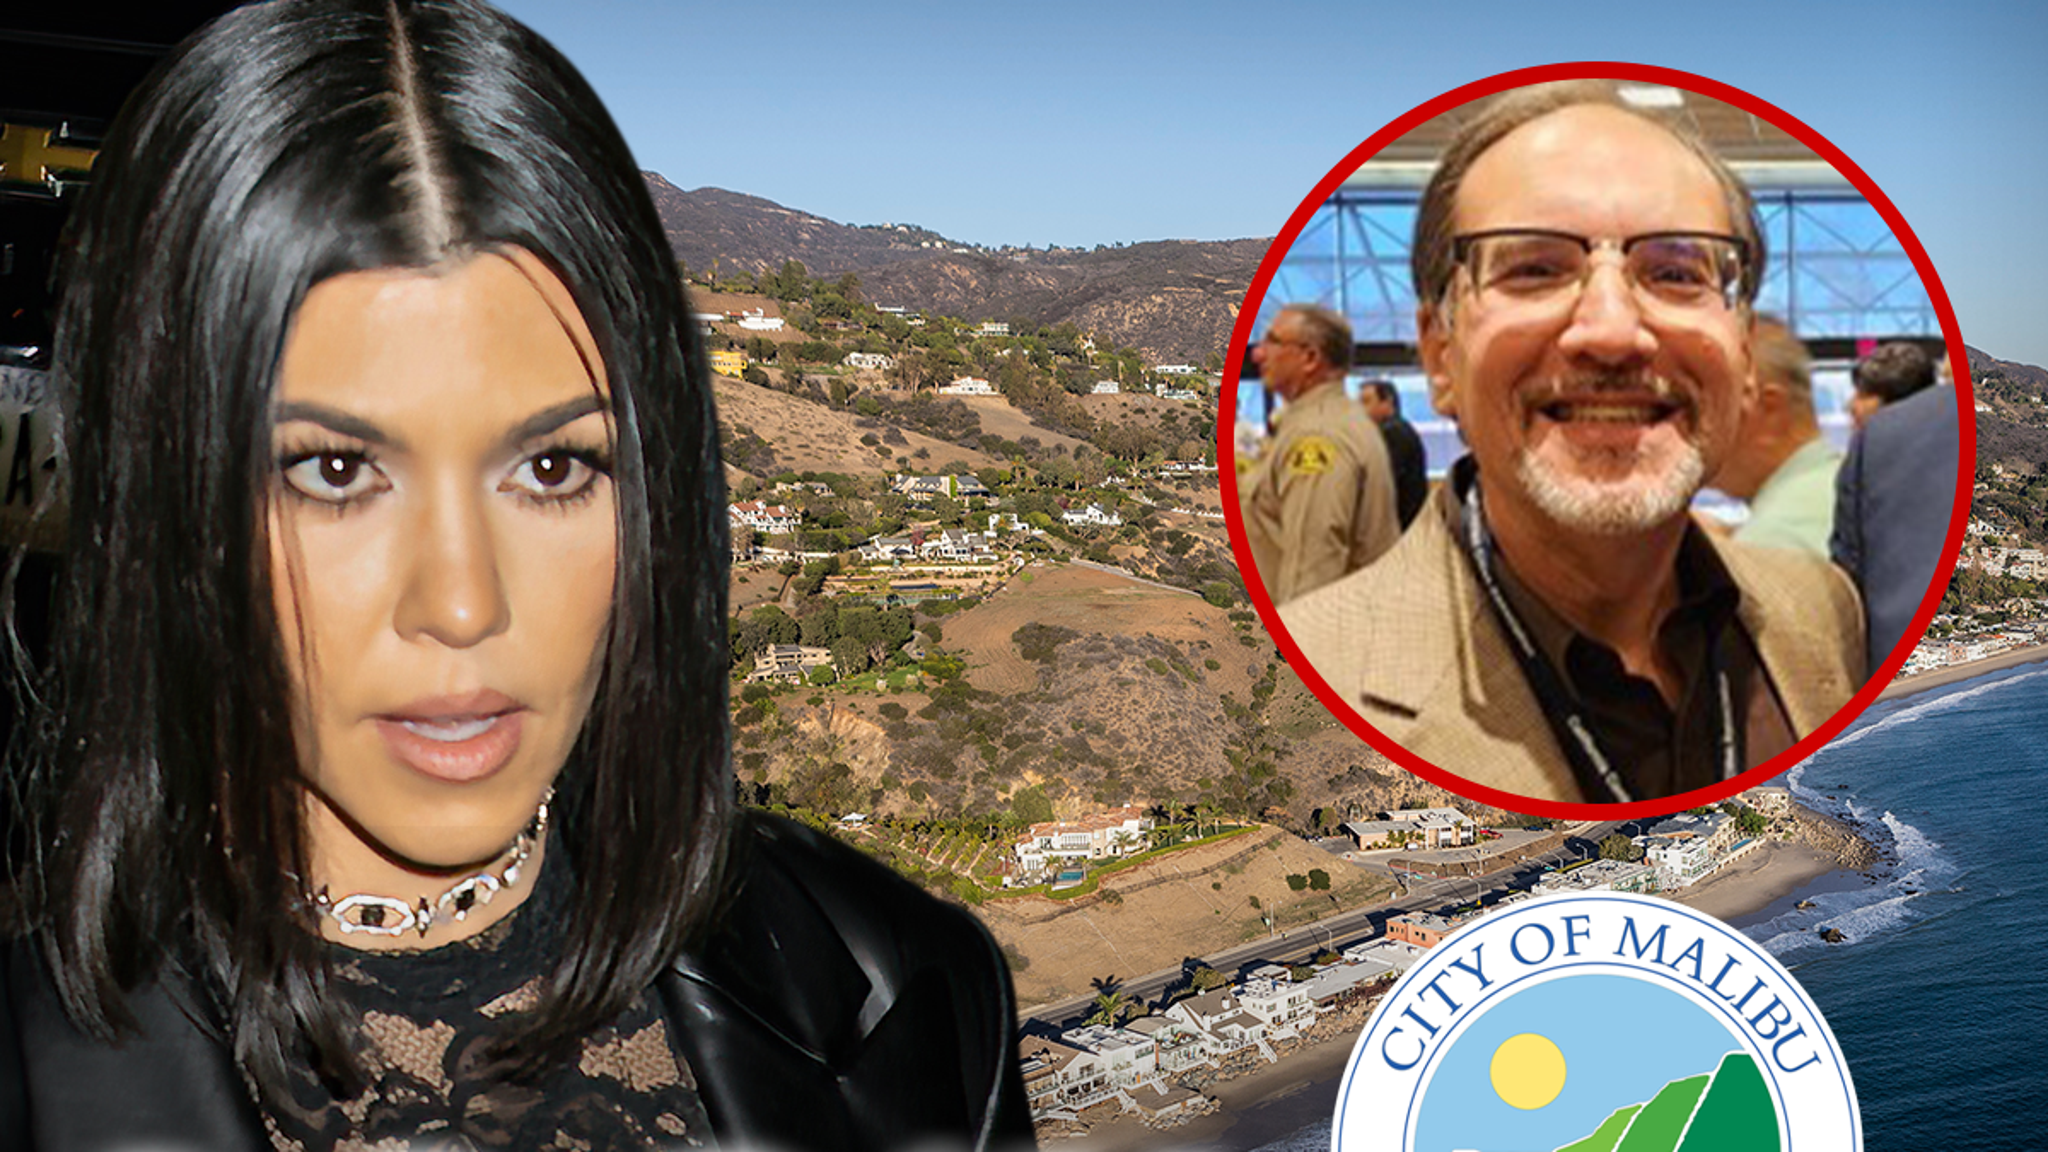 Il sindaco di Malibu critica Kourtney Kardashian per il permesso fraudolento di baby shower